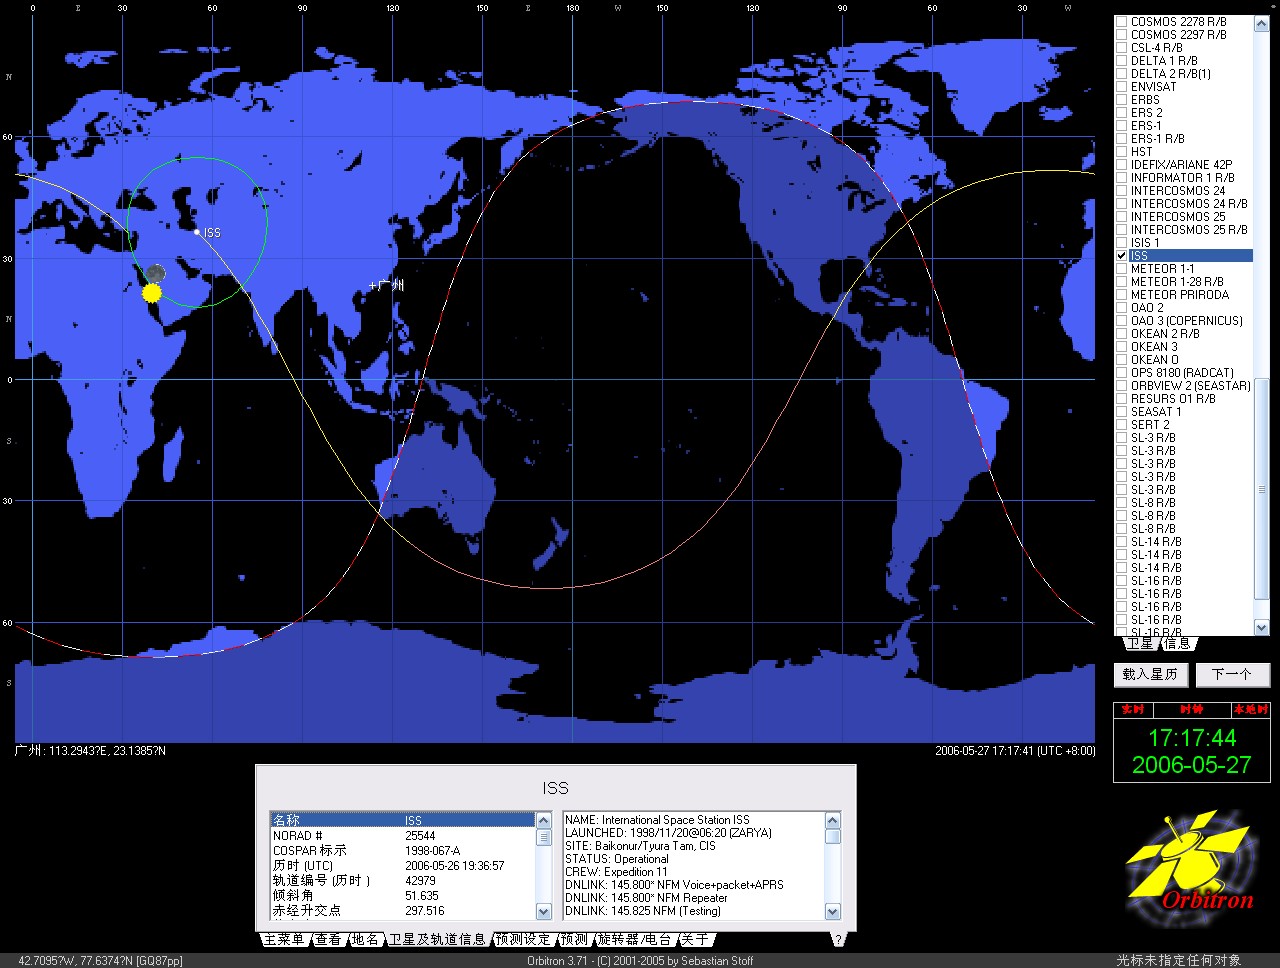 转载 From Hellocq：昨天晚间我收到了ISS国际空间站的信号了145.800